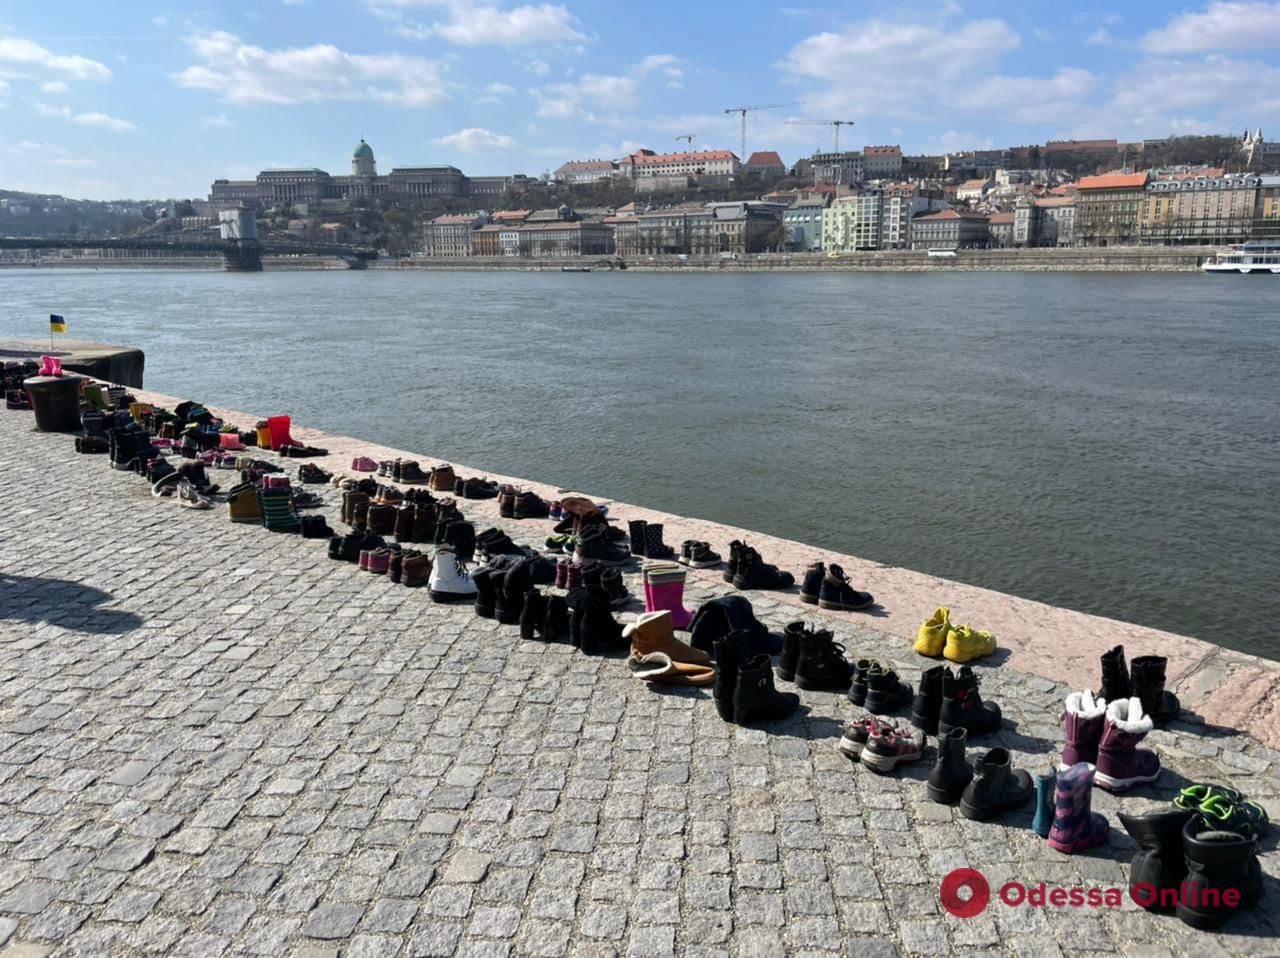 В Будапеште почтили память убитых в Драмтеатре Мариуполя, выложив 300 пар обуви на берегу Дуная